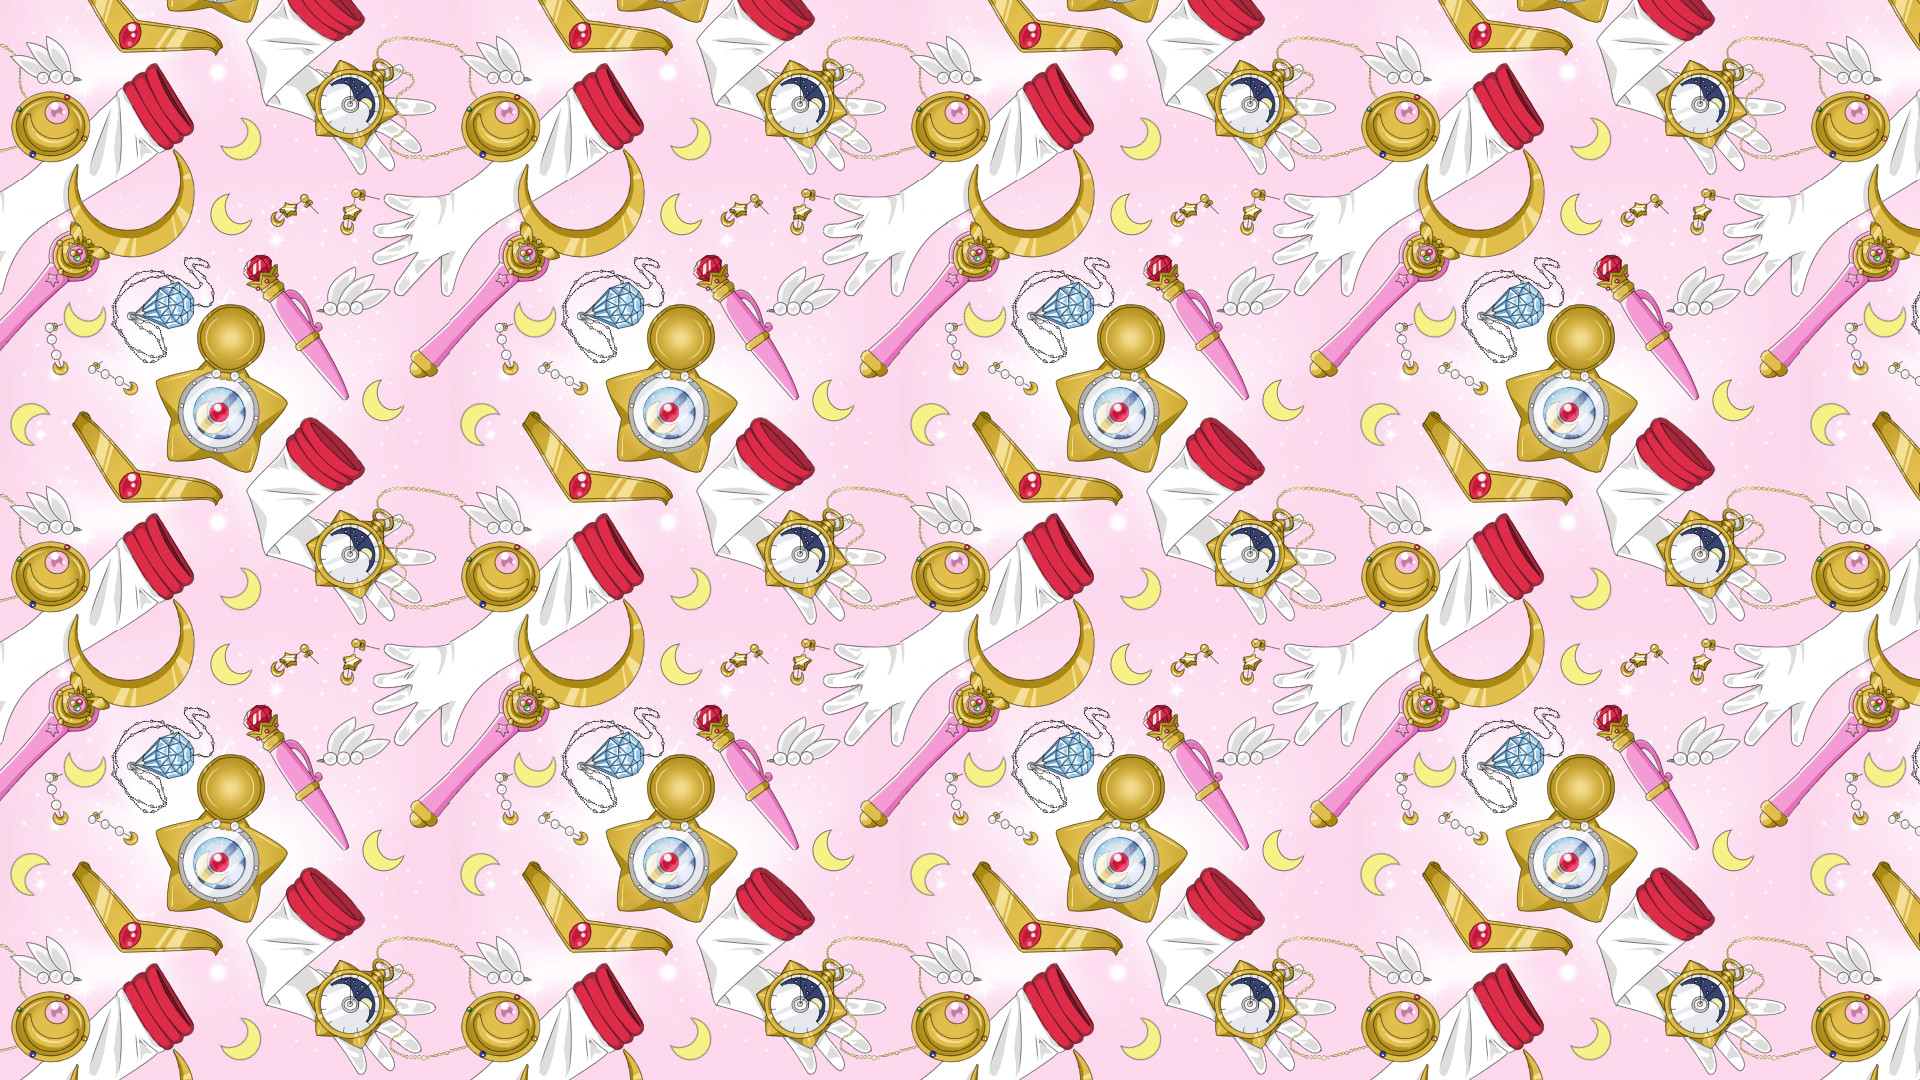 Sailor Moon Repeating Pattern Sheet by Tsuki ni Kawatte